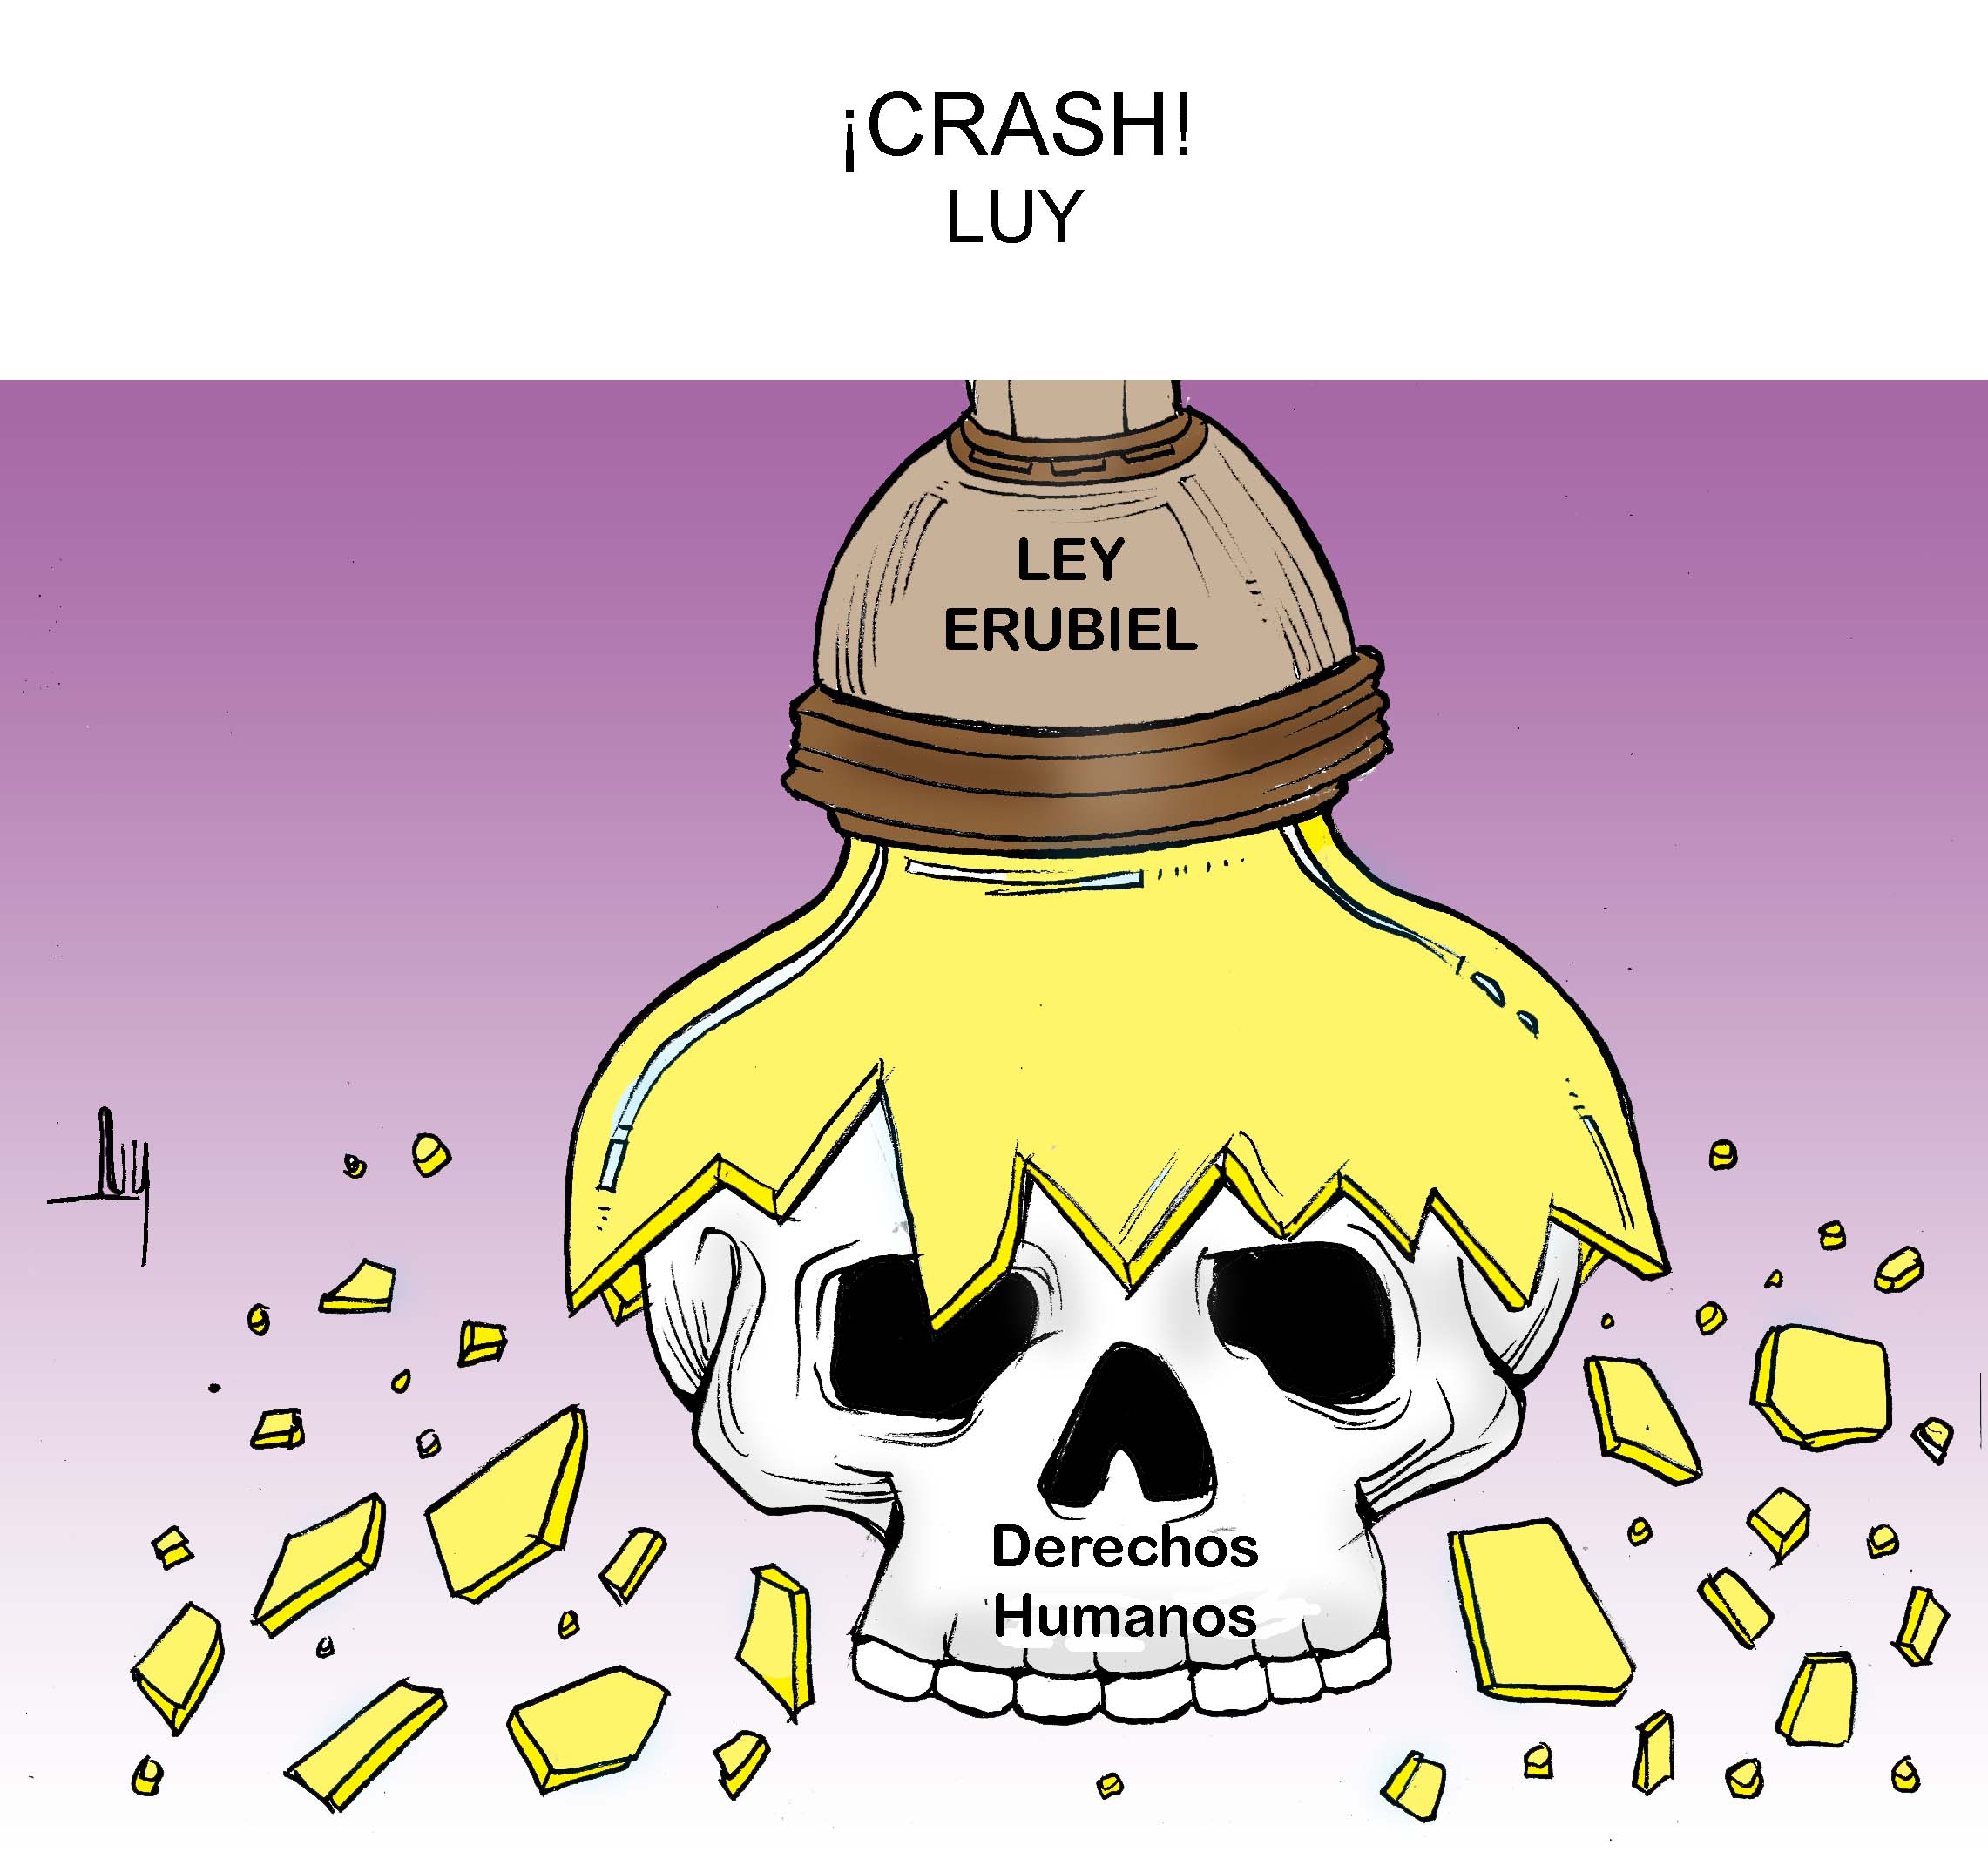 crash